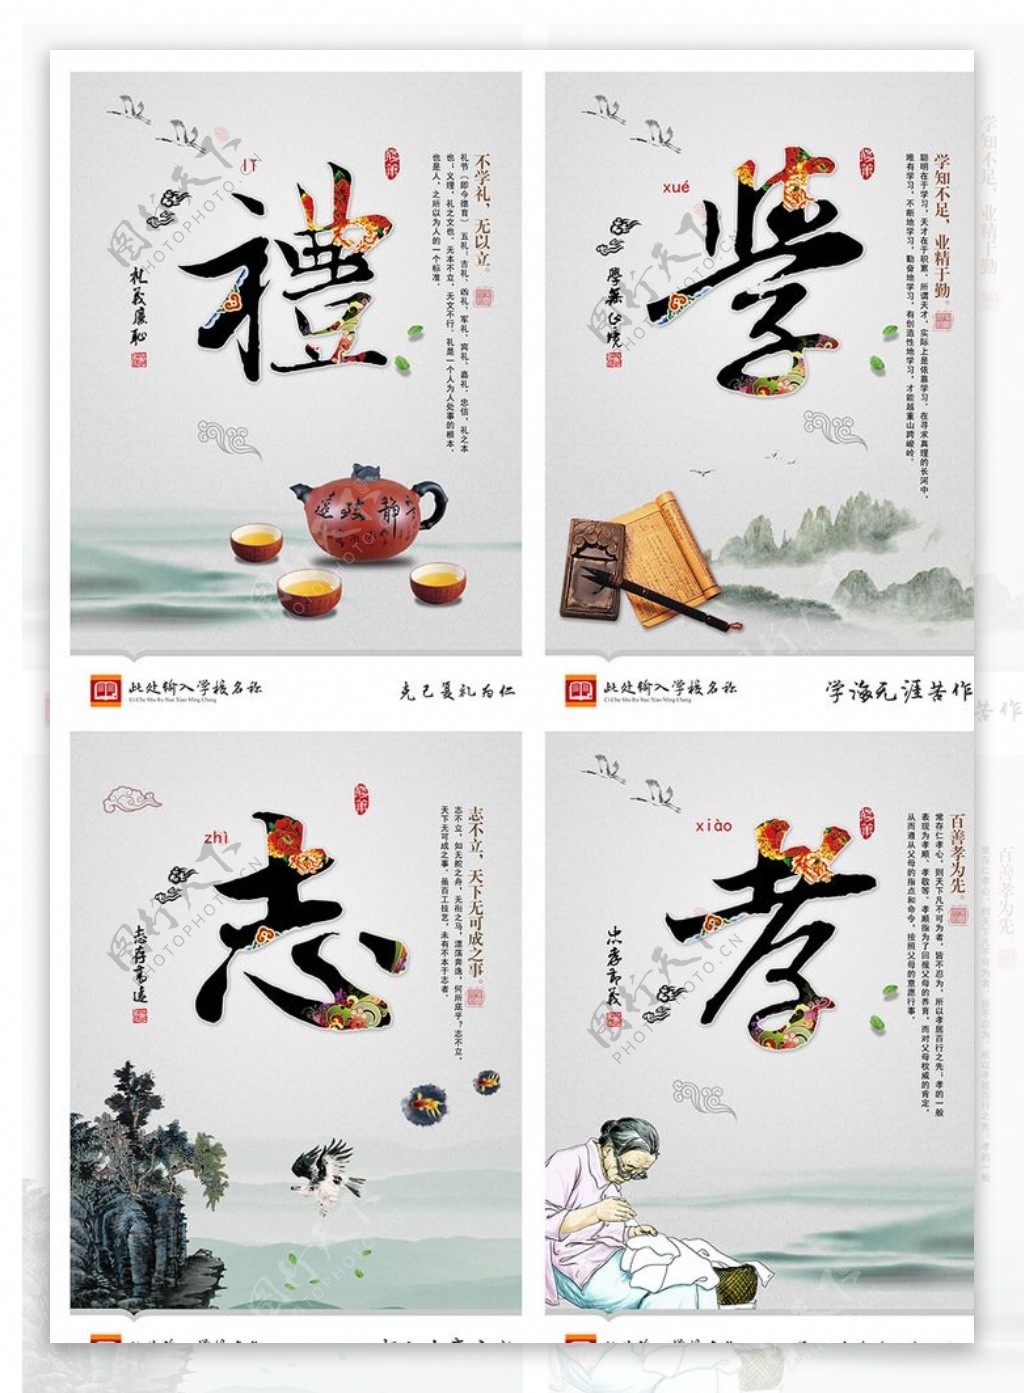 中国风校园文化海报设计